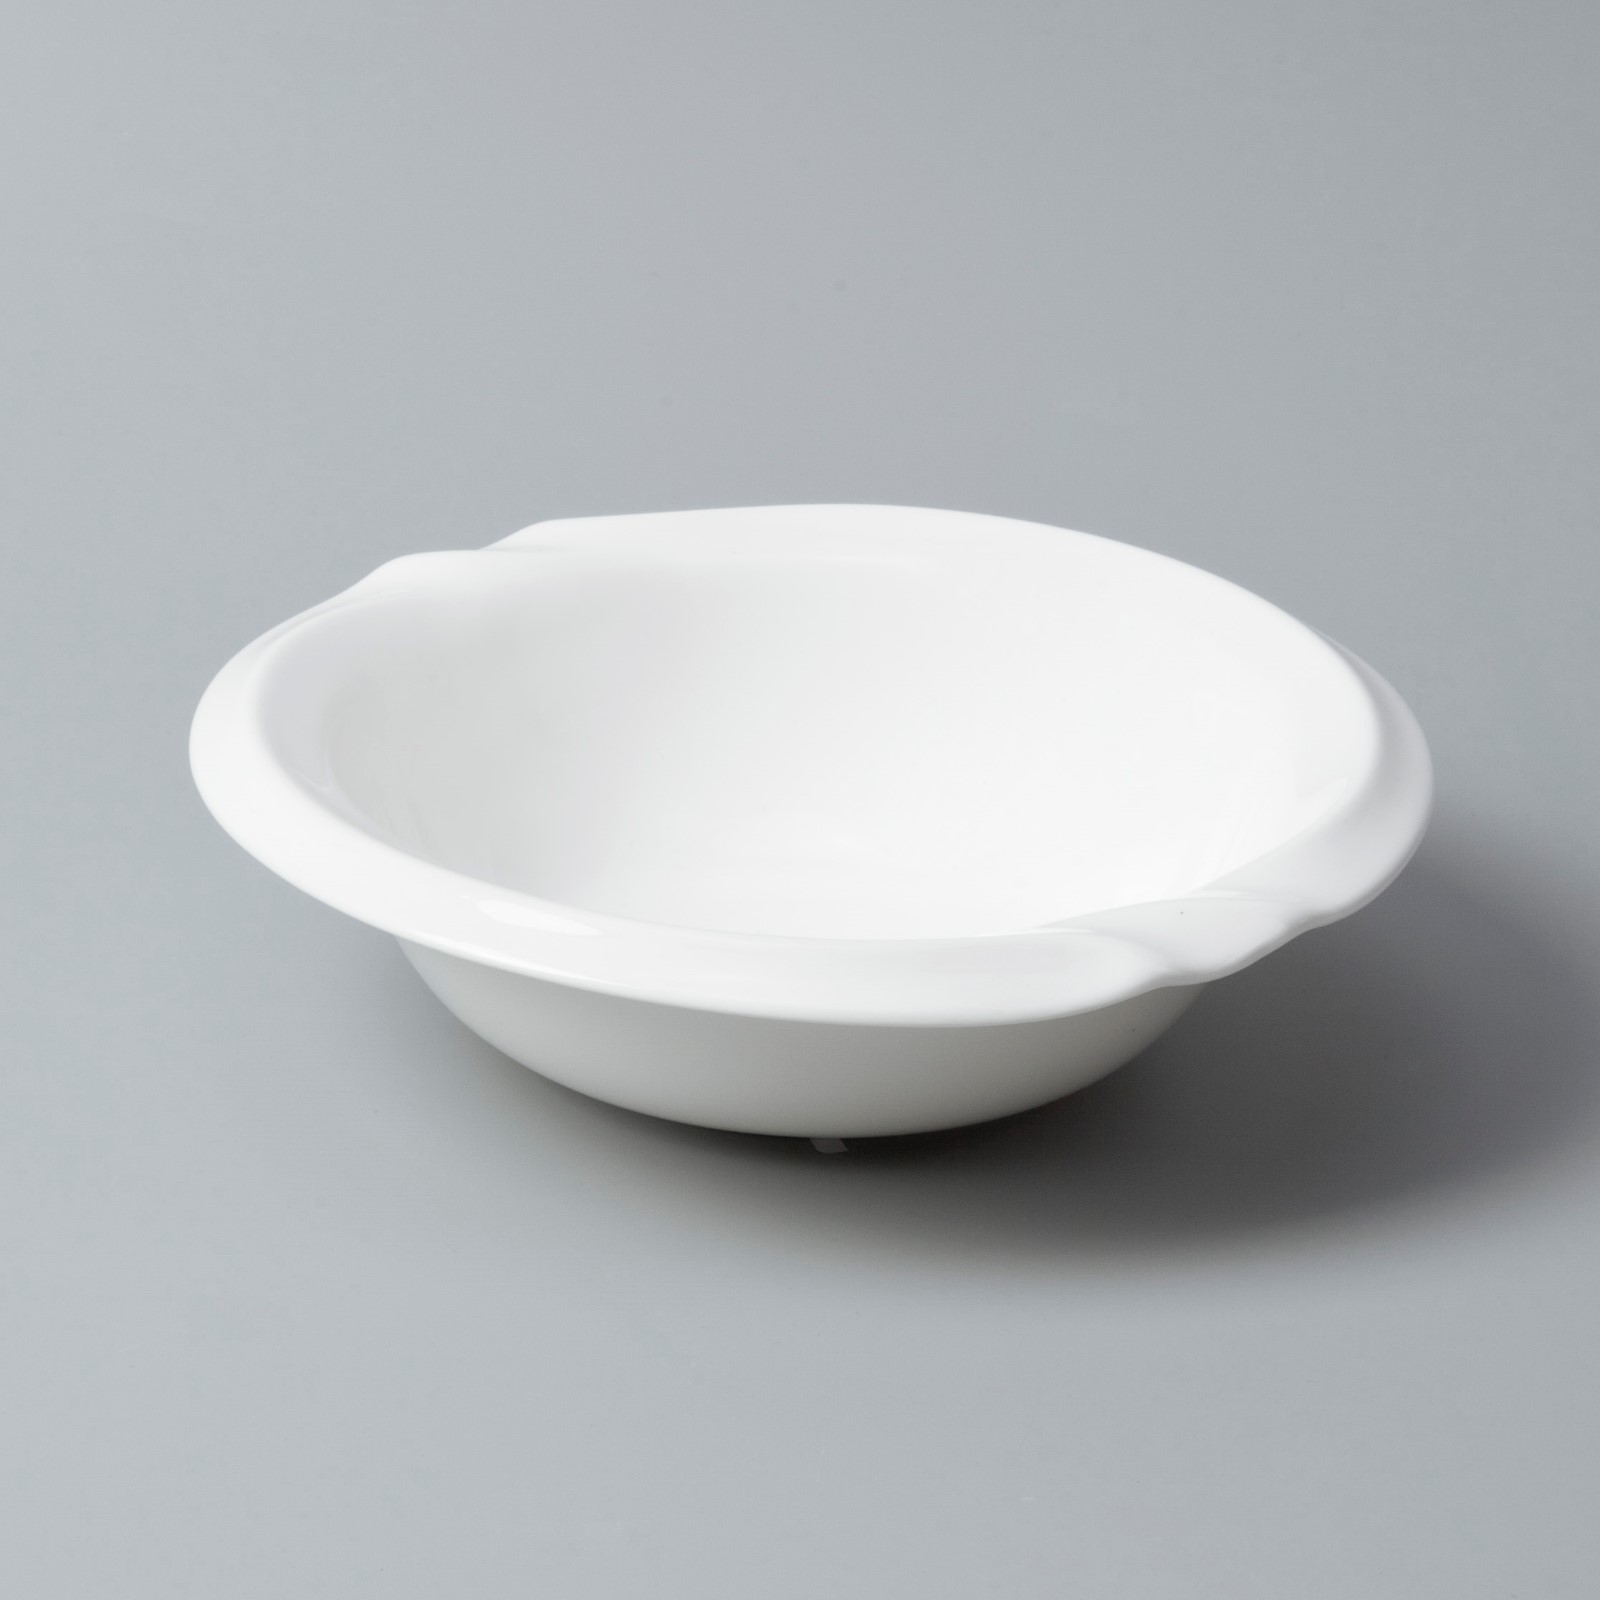 Custom white dinnerware sets for 8 factory for home-3